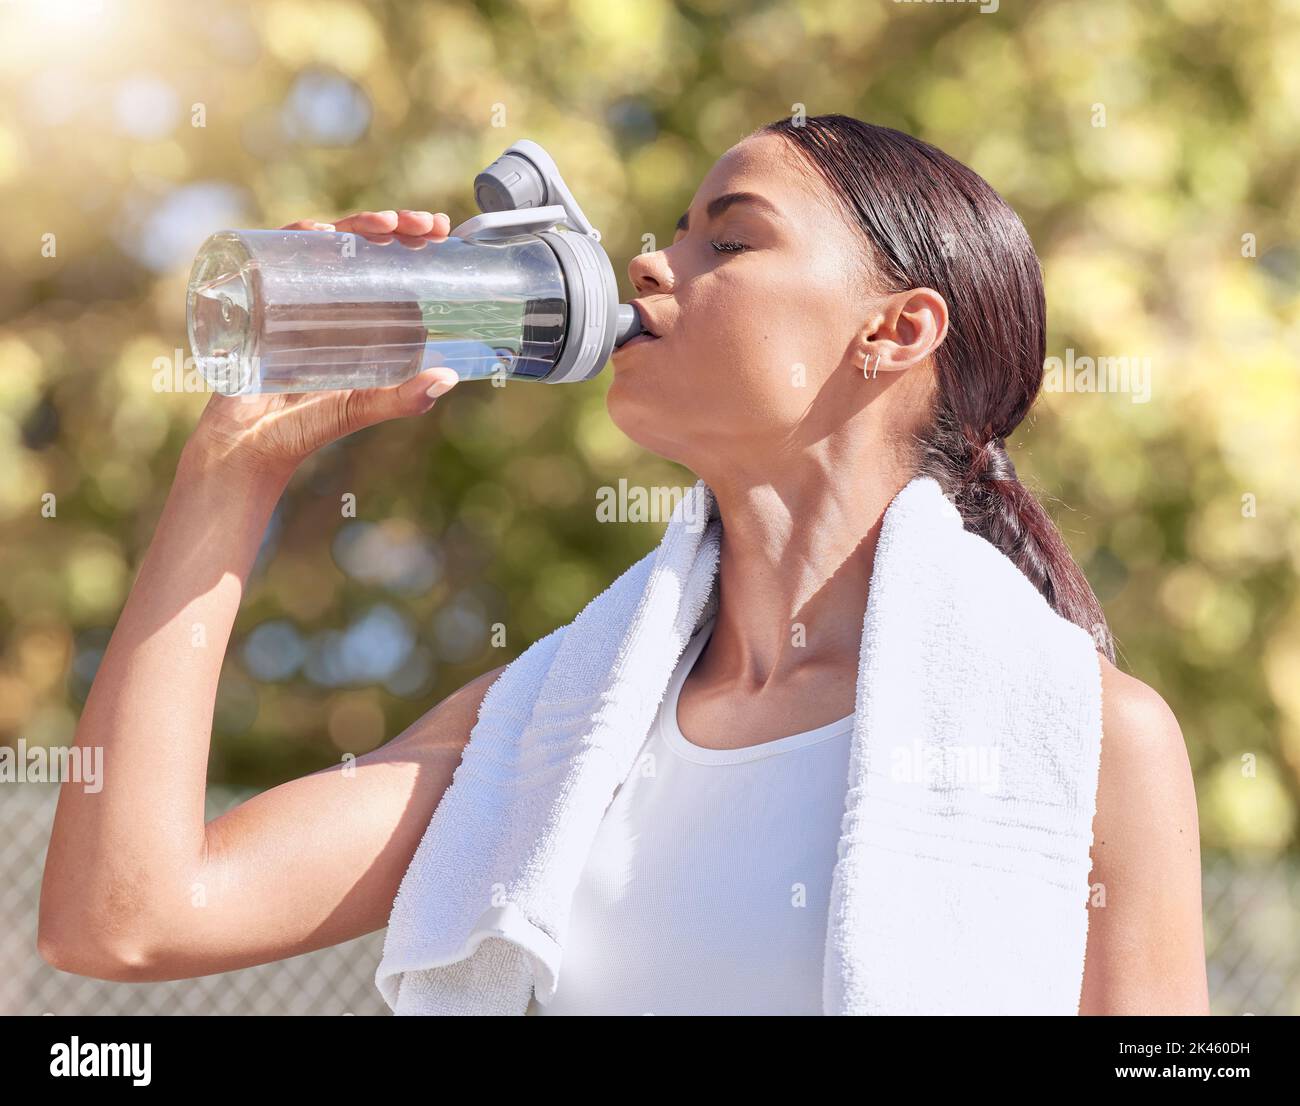 Frau, Sport treiben und trinken Sie Wasser, während Sie im Sommer laufen oder draußen trainieren, um sich fit zu machen. Lady, Workout und Flasche für die Hydratation in Sonne, Läufer und Stockfoto